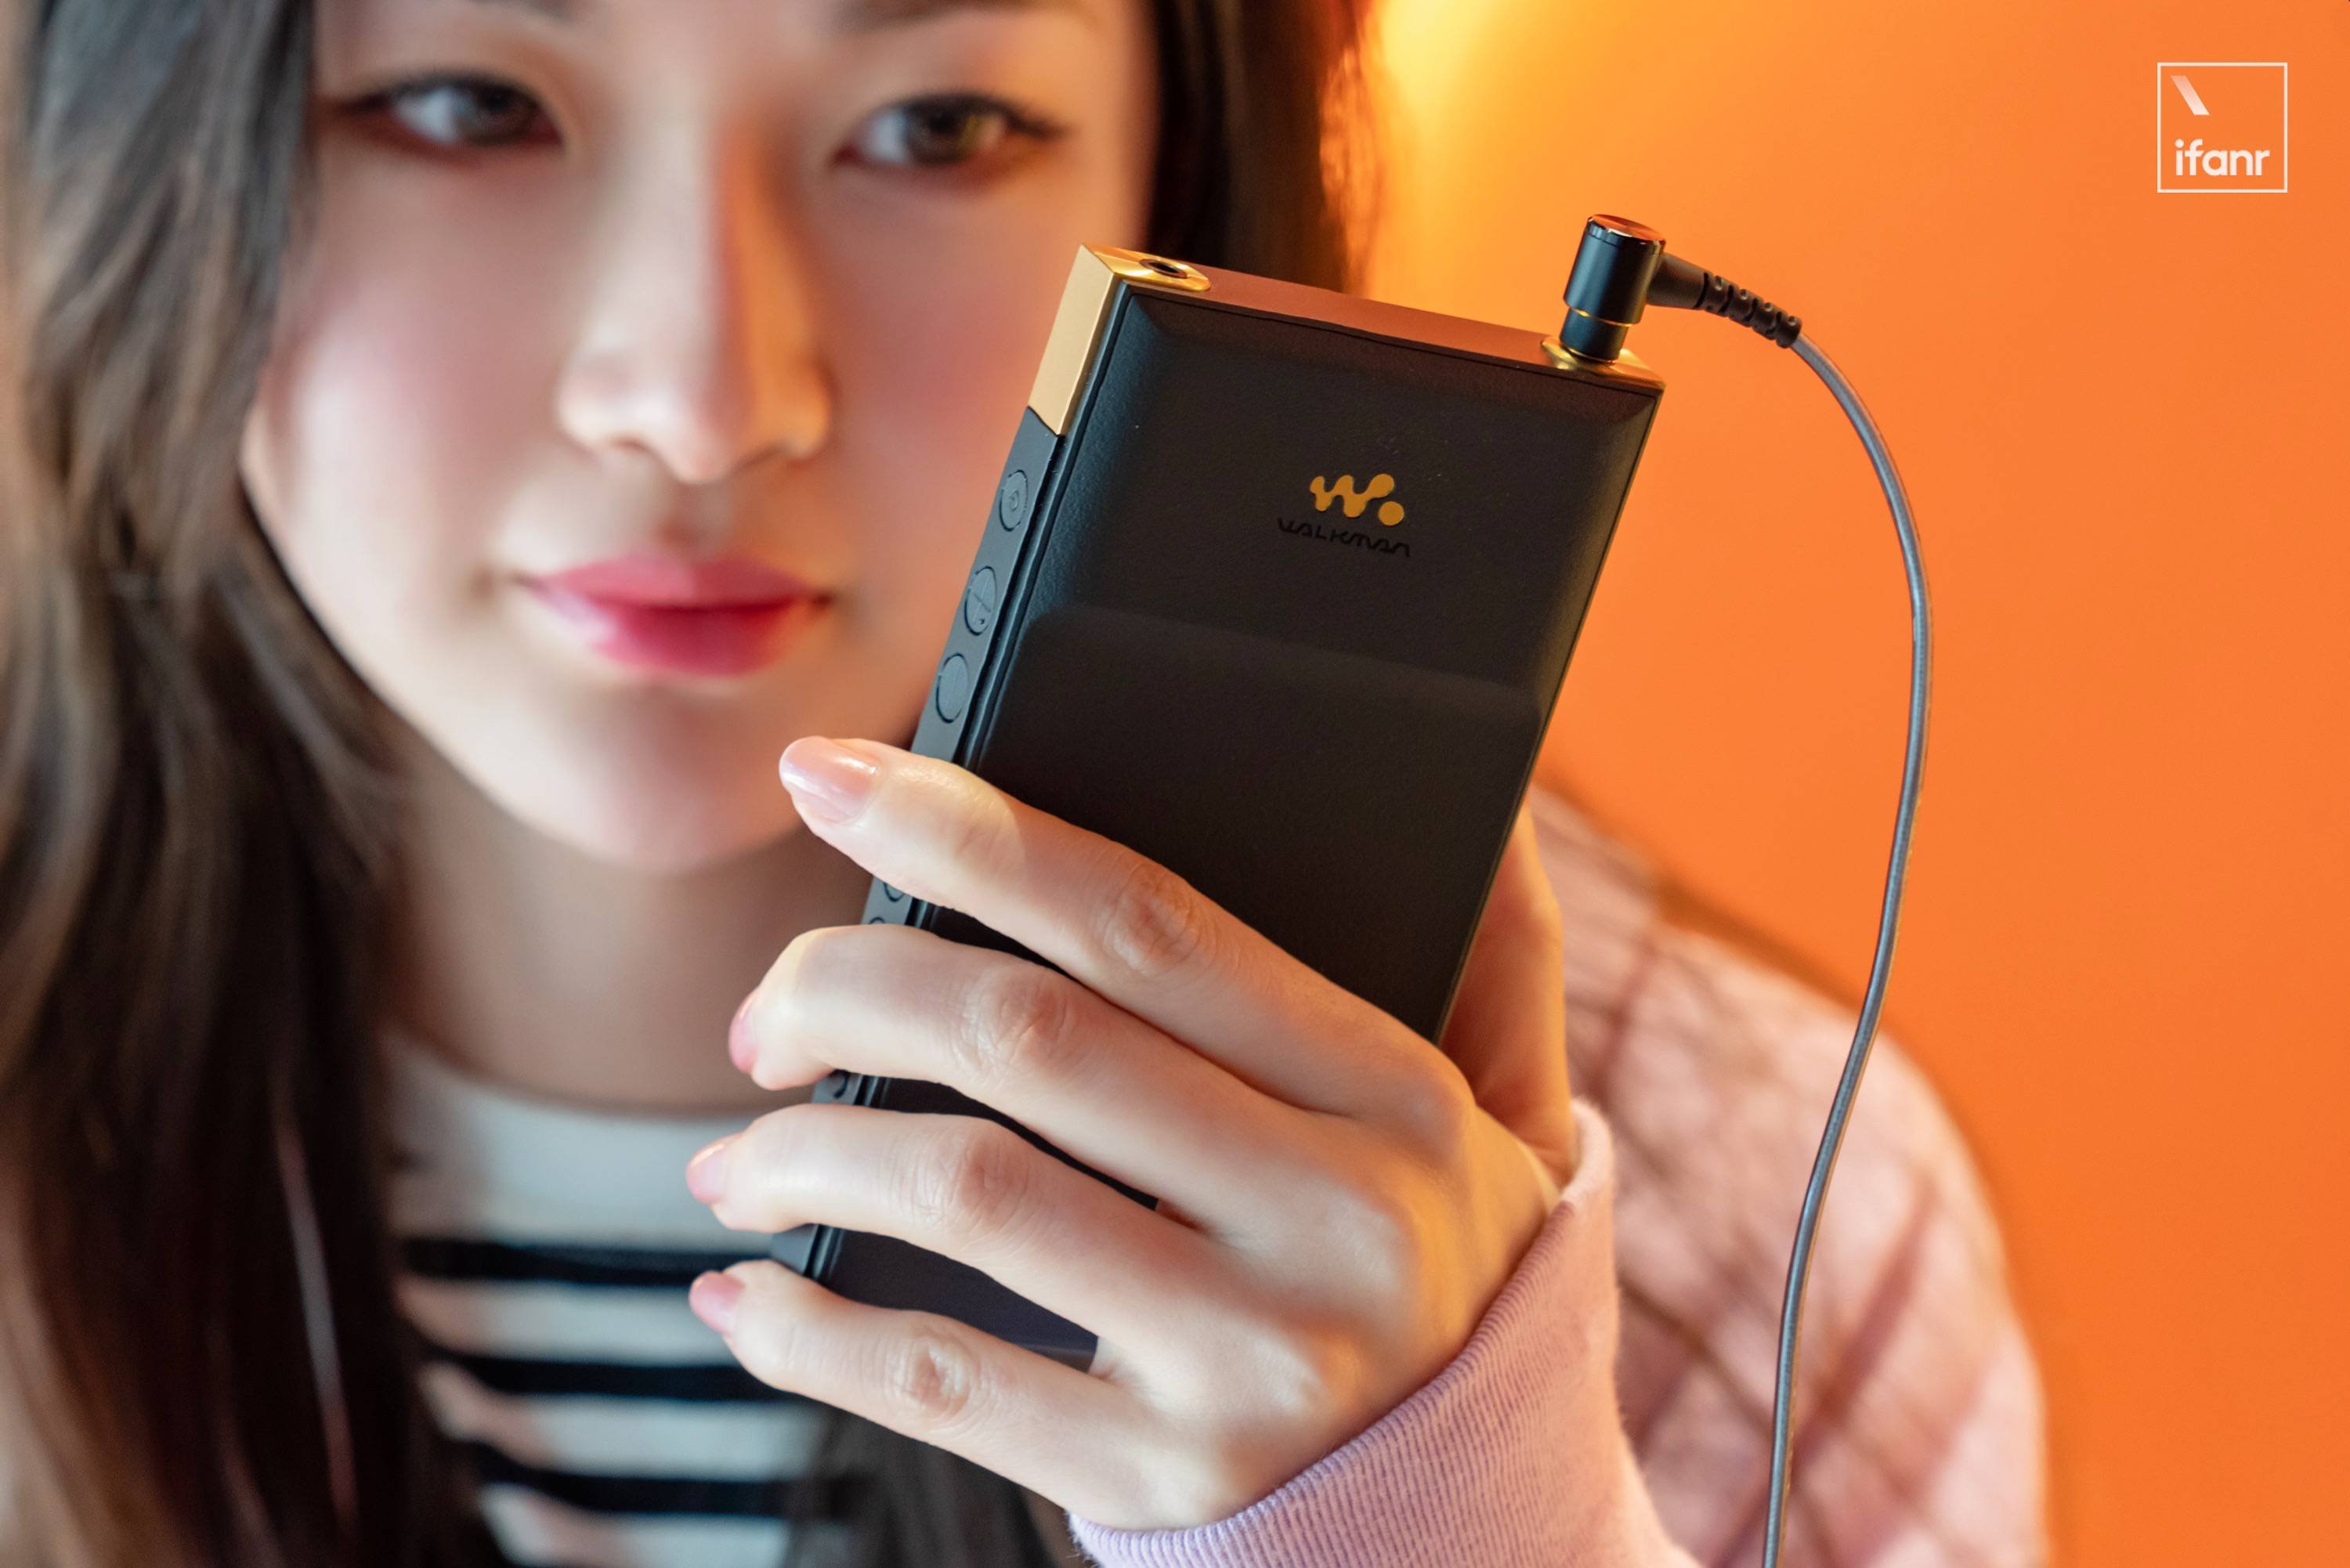 IMG 3052 - Esperienza Sony NW-ZX700: “piccolo mattone nero” più portatile, evoluzione a livello ingegneristico del suono alcolico portatile